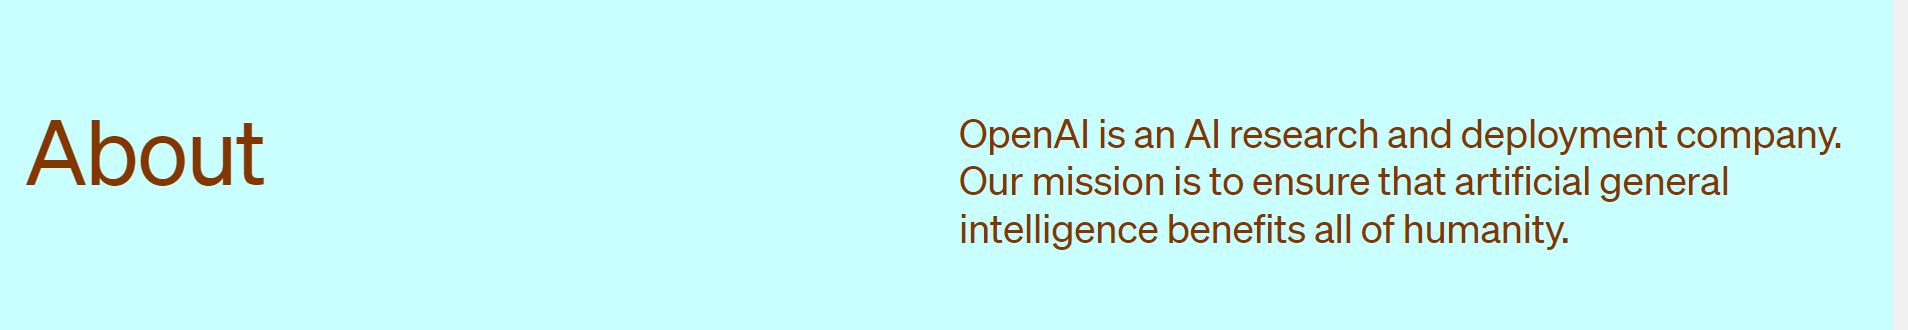 Описание компании на сайте OpenAI